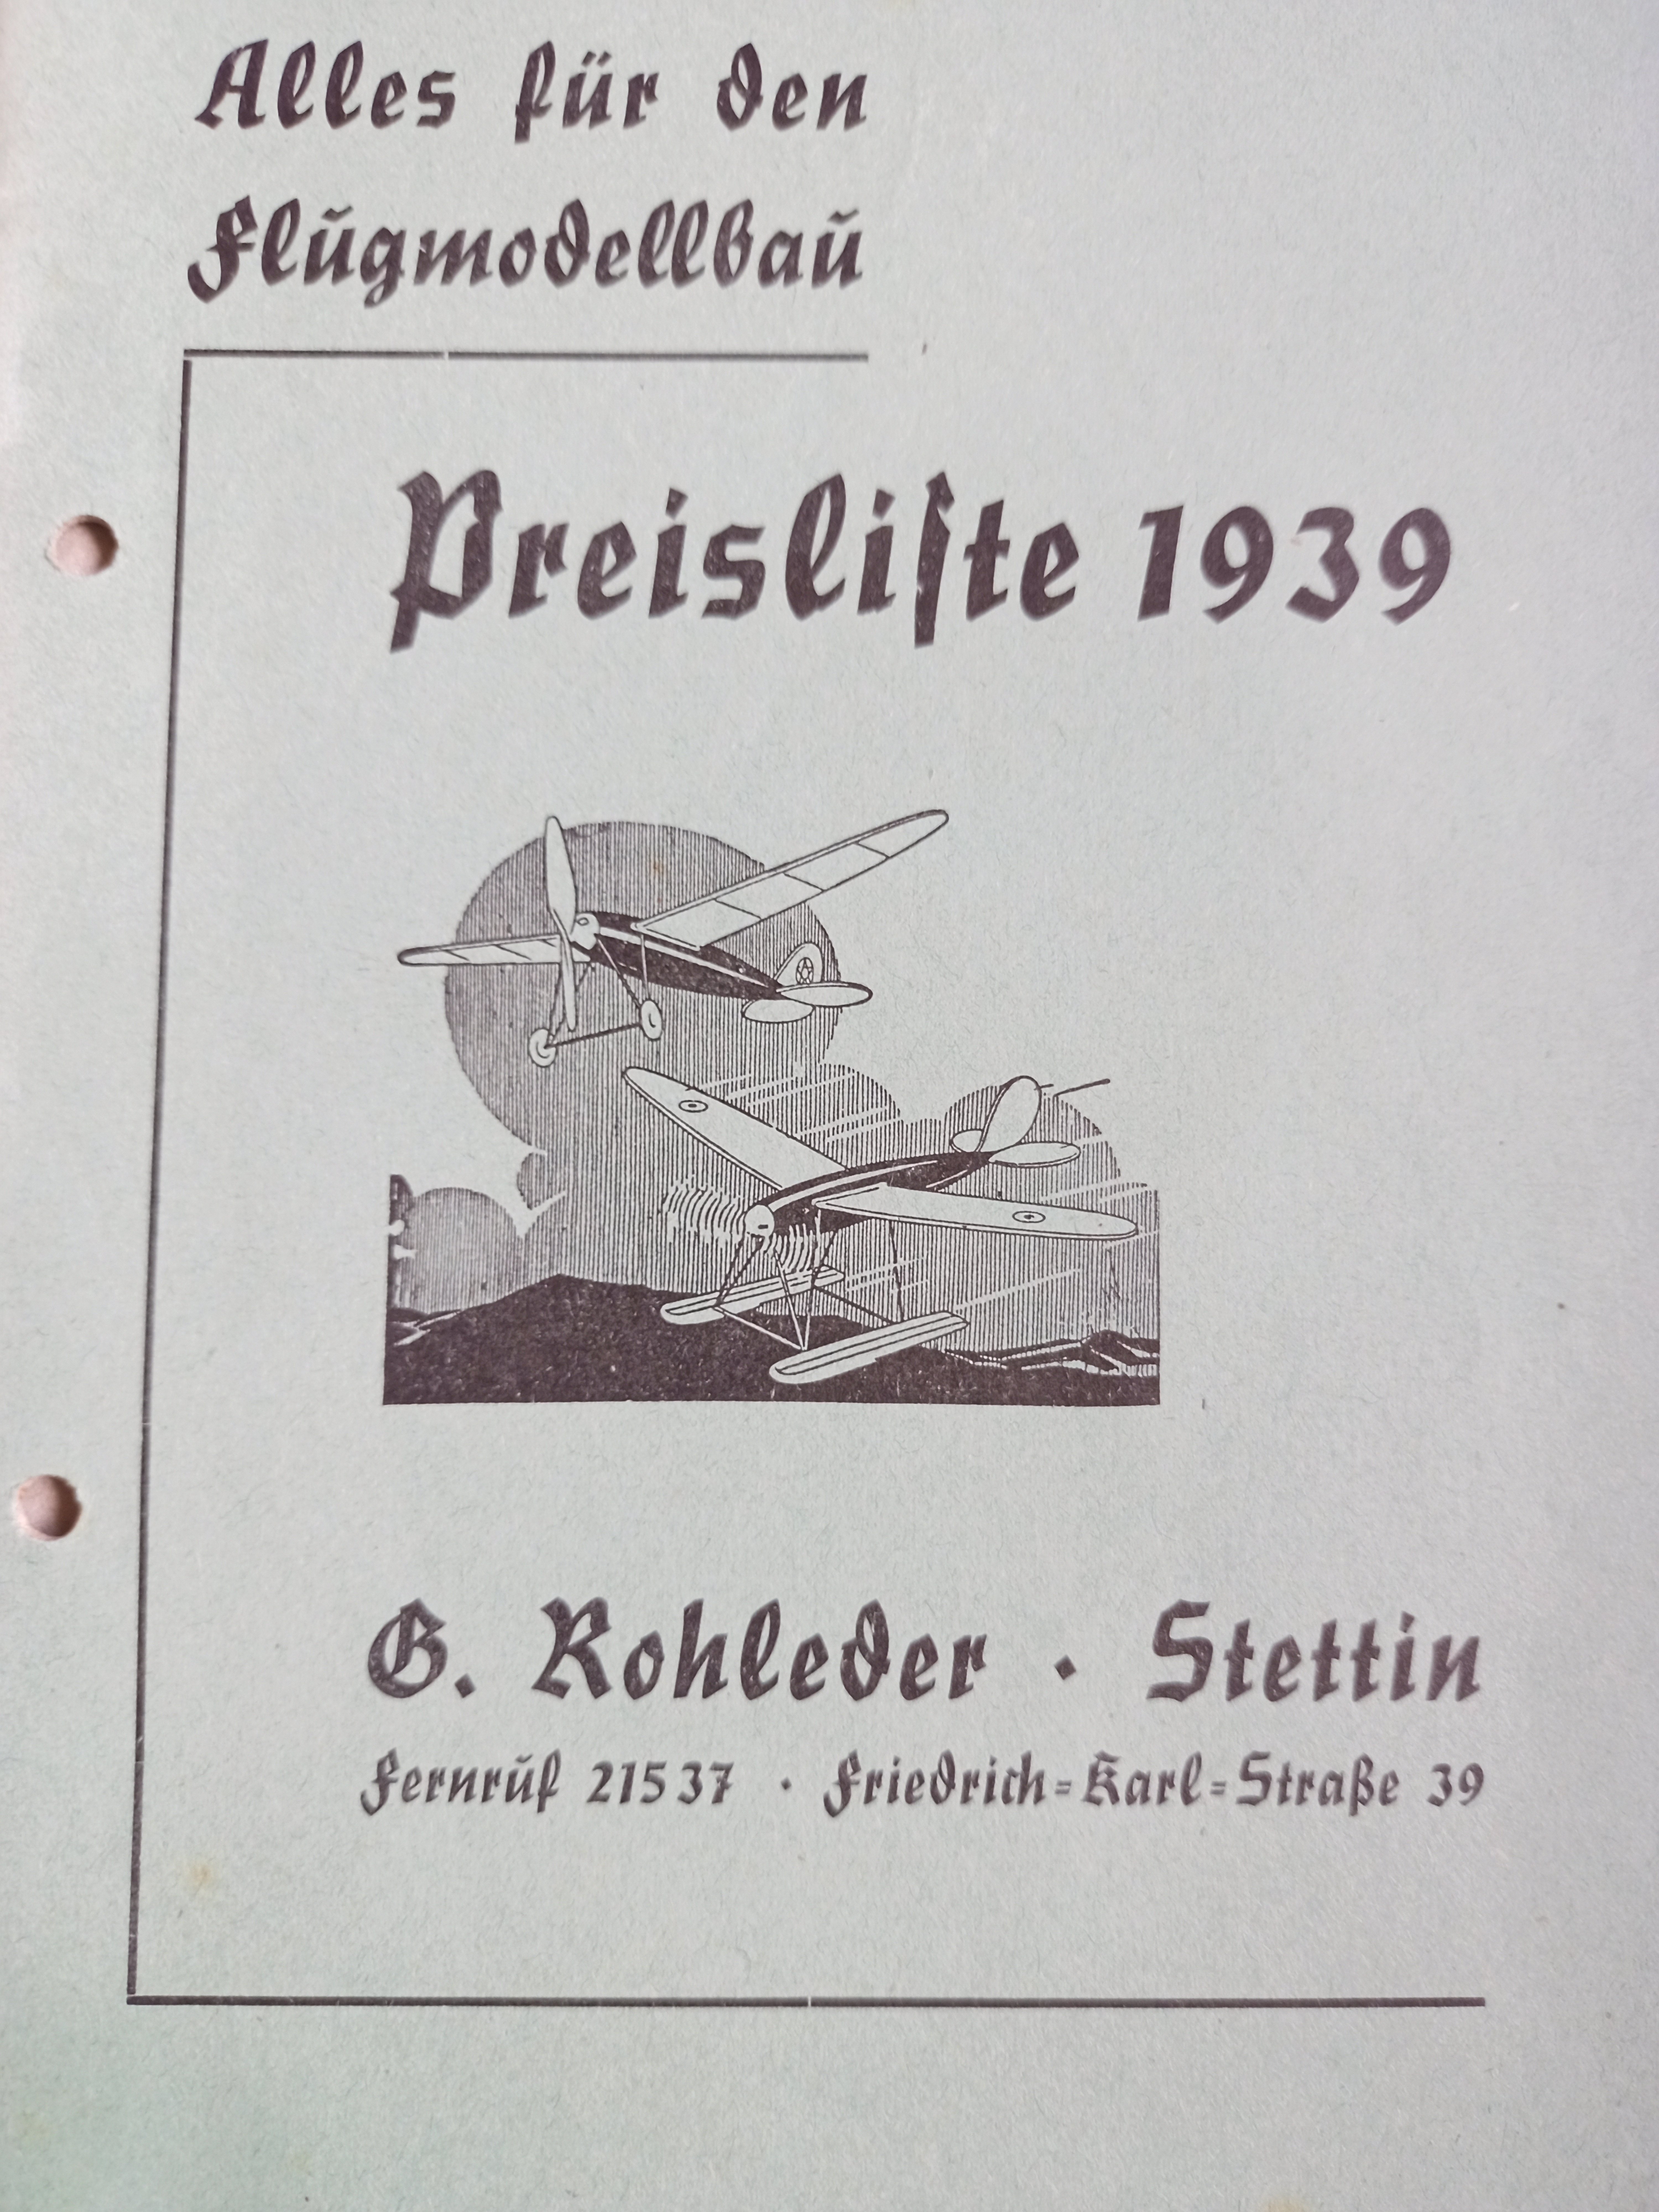 Rohleder Stettin (Deutsches Segelflugmuseum mit Modellflug CC BY-NC-SA)